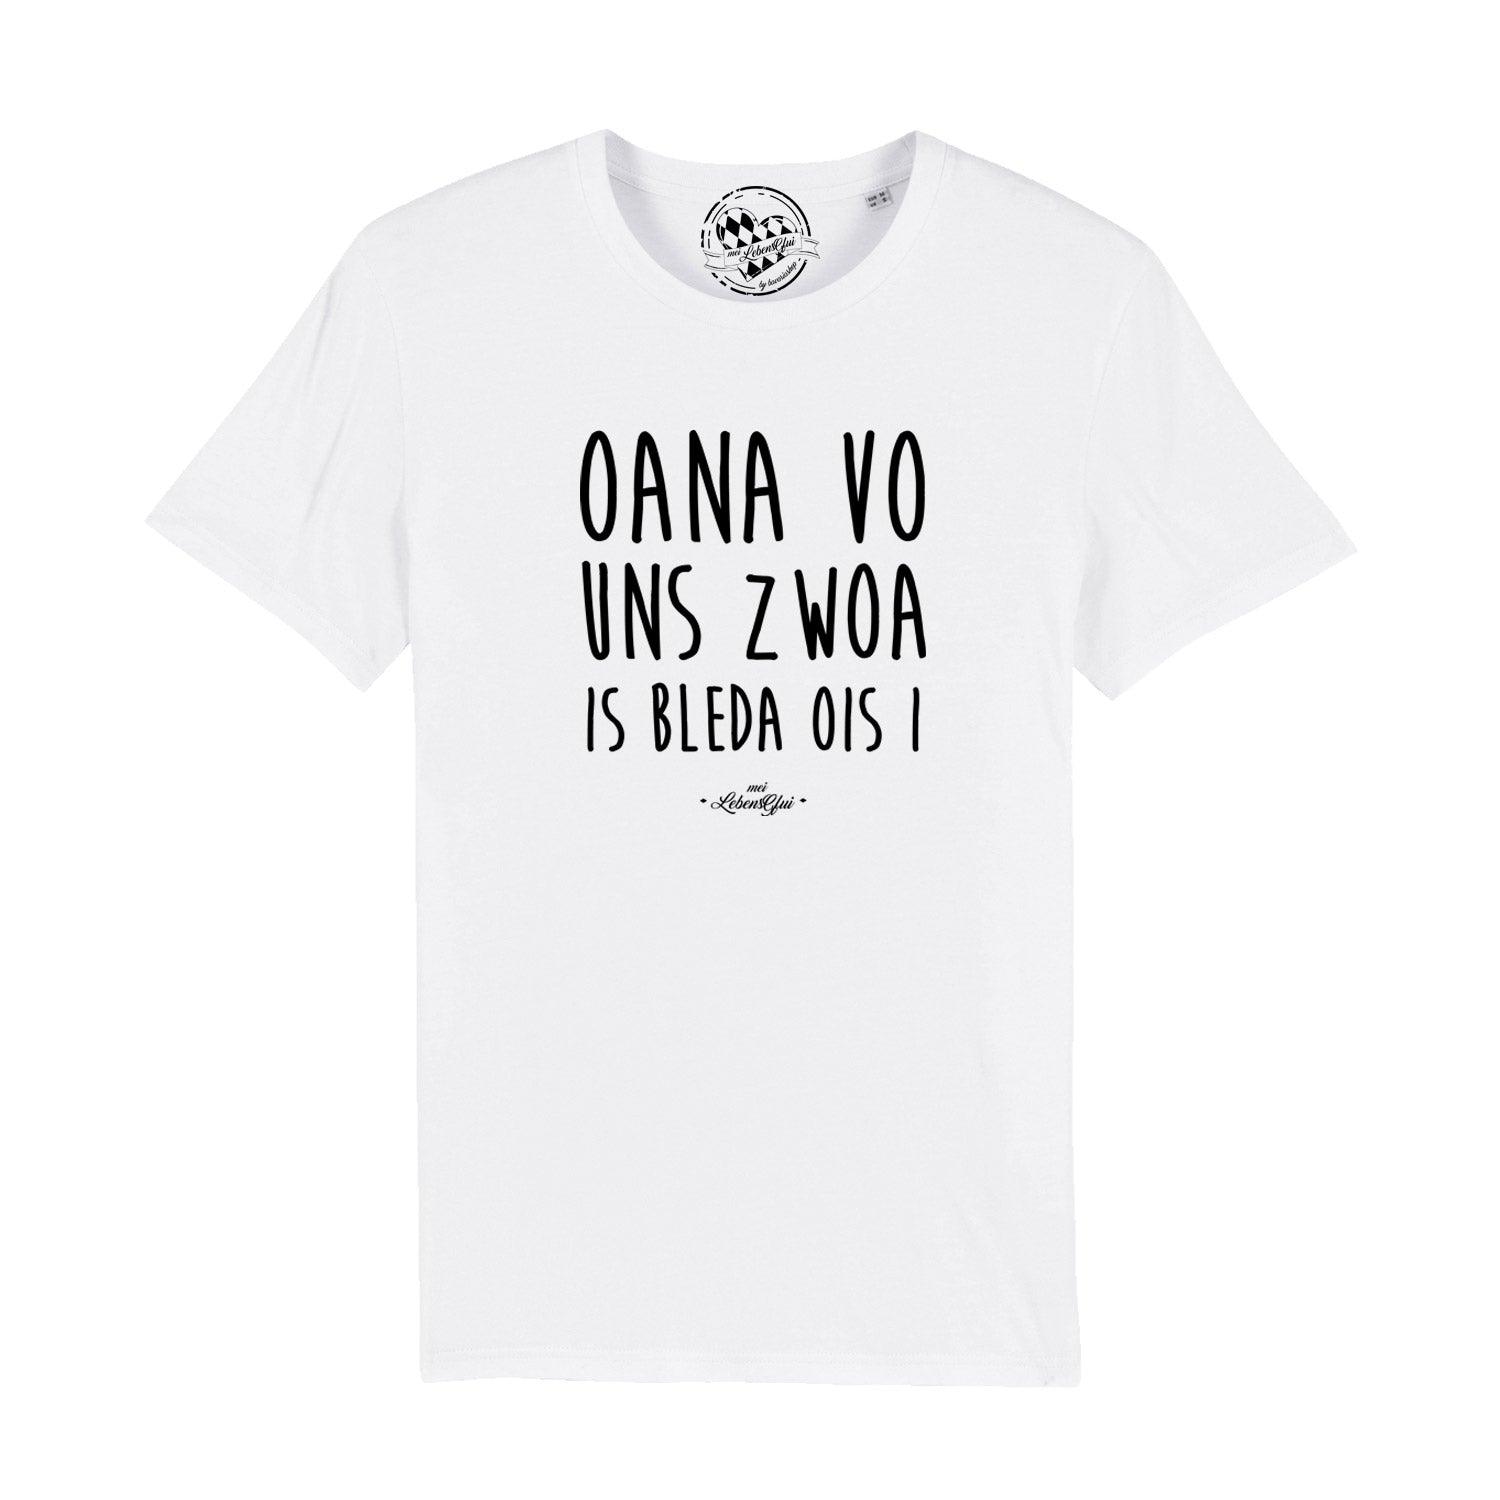 Herren T-Shirt "Oana vo uns zwoa..." - bavariashop - mei LebensGfui